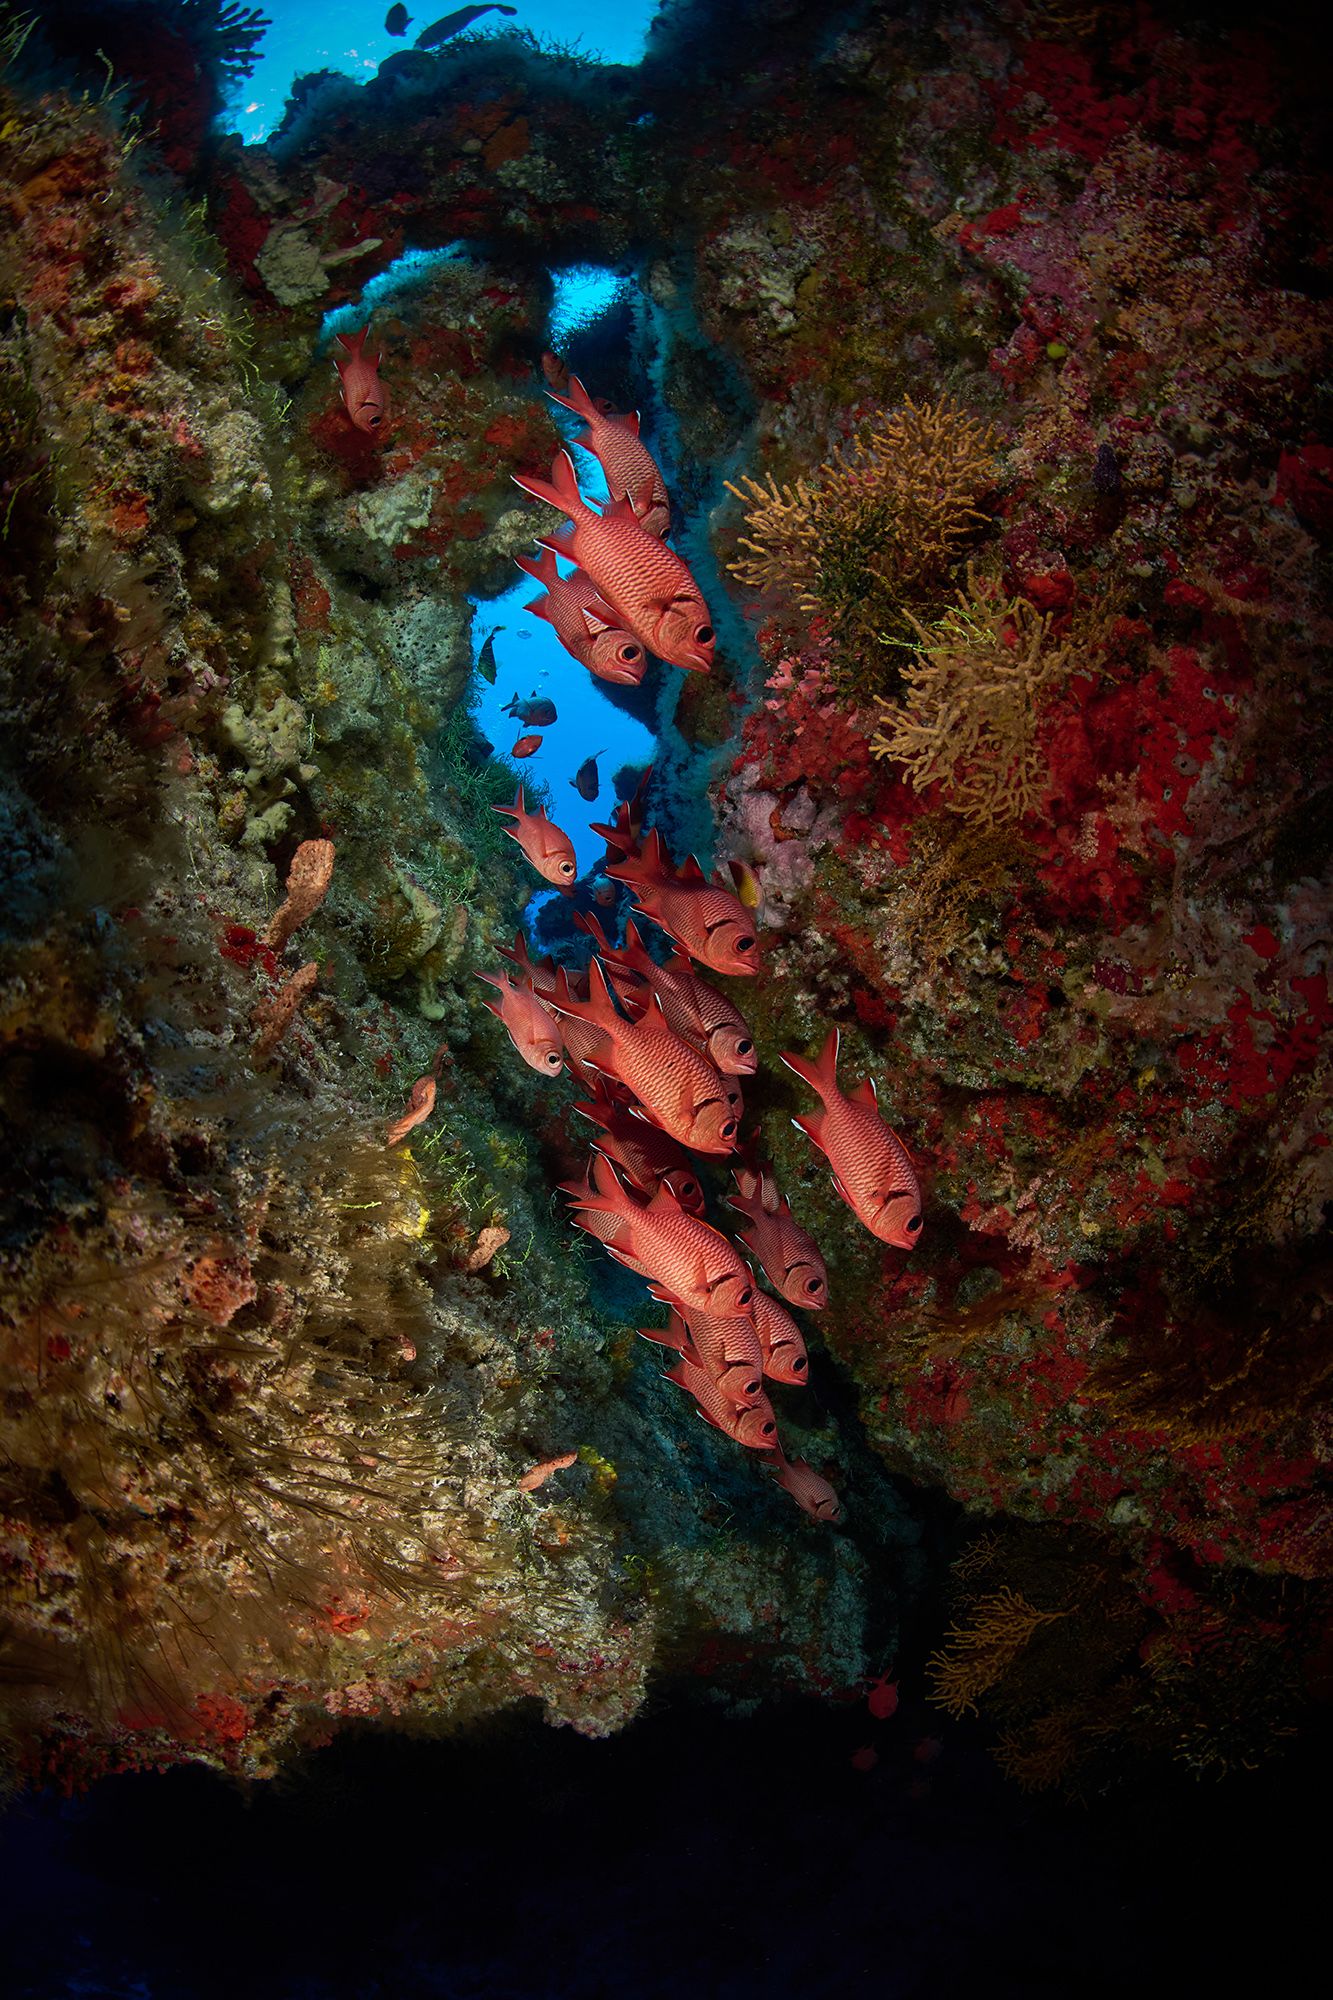 рыбы-солдаты, рыбы, море, океан, пещера,дайвинг, подводная фотосъемка, PAVEL PEREPECHAEV